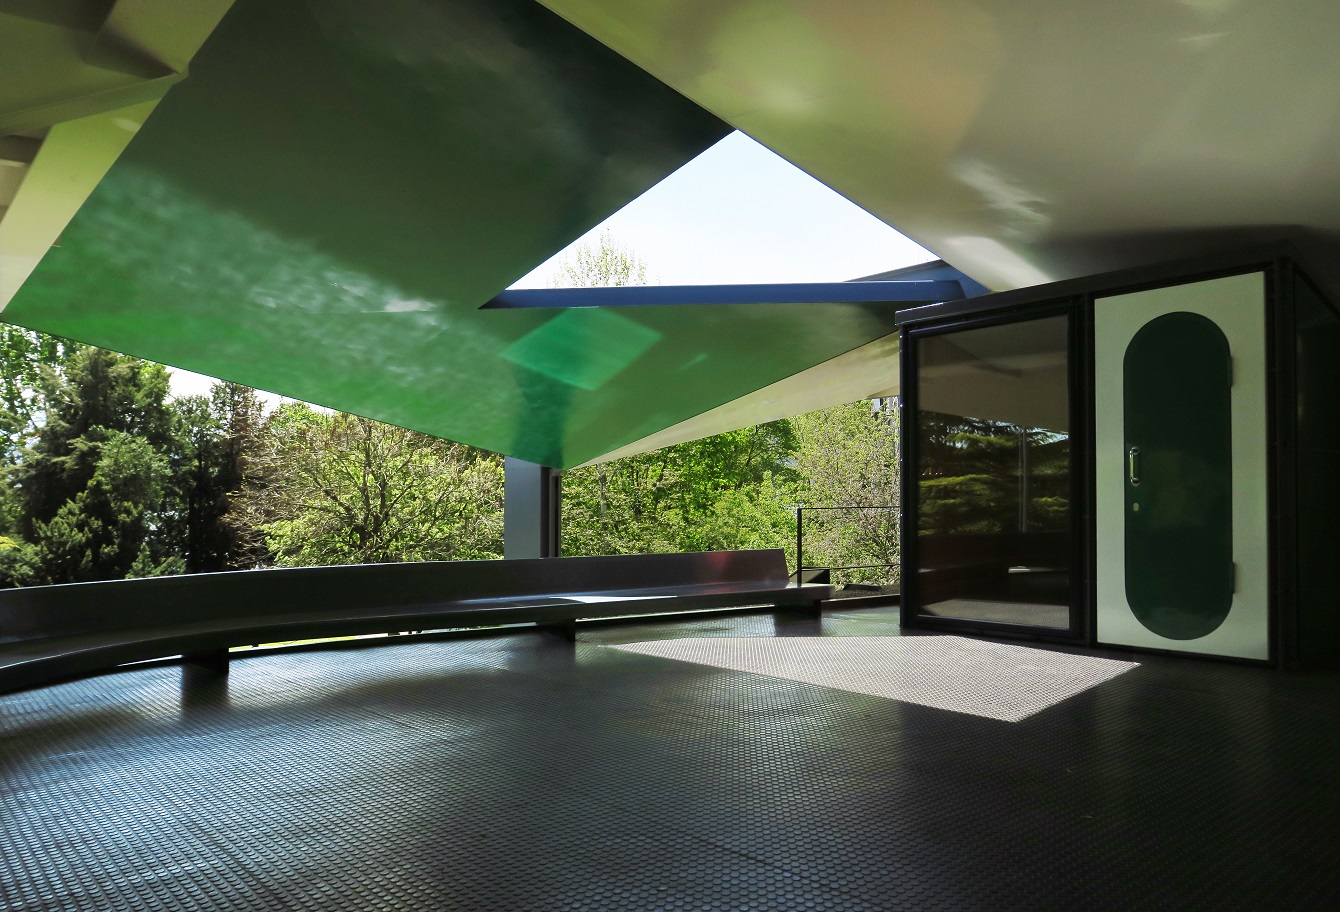 Le Corbusier Pavilion - Photo by Paul Clemence